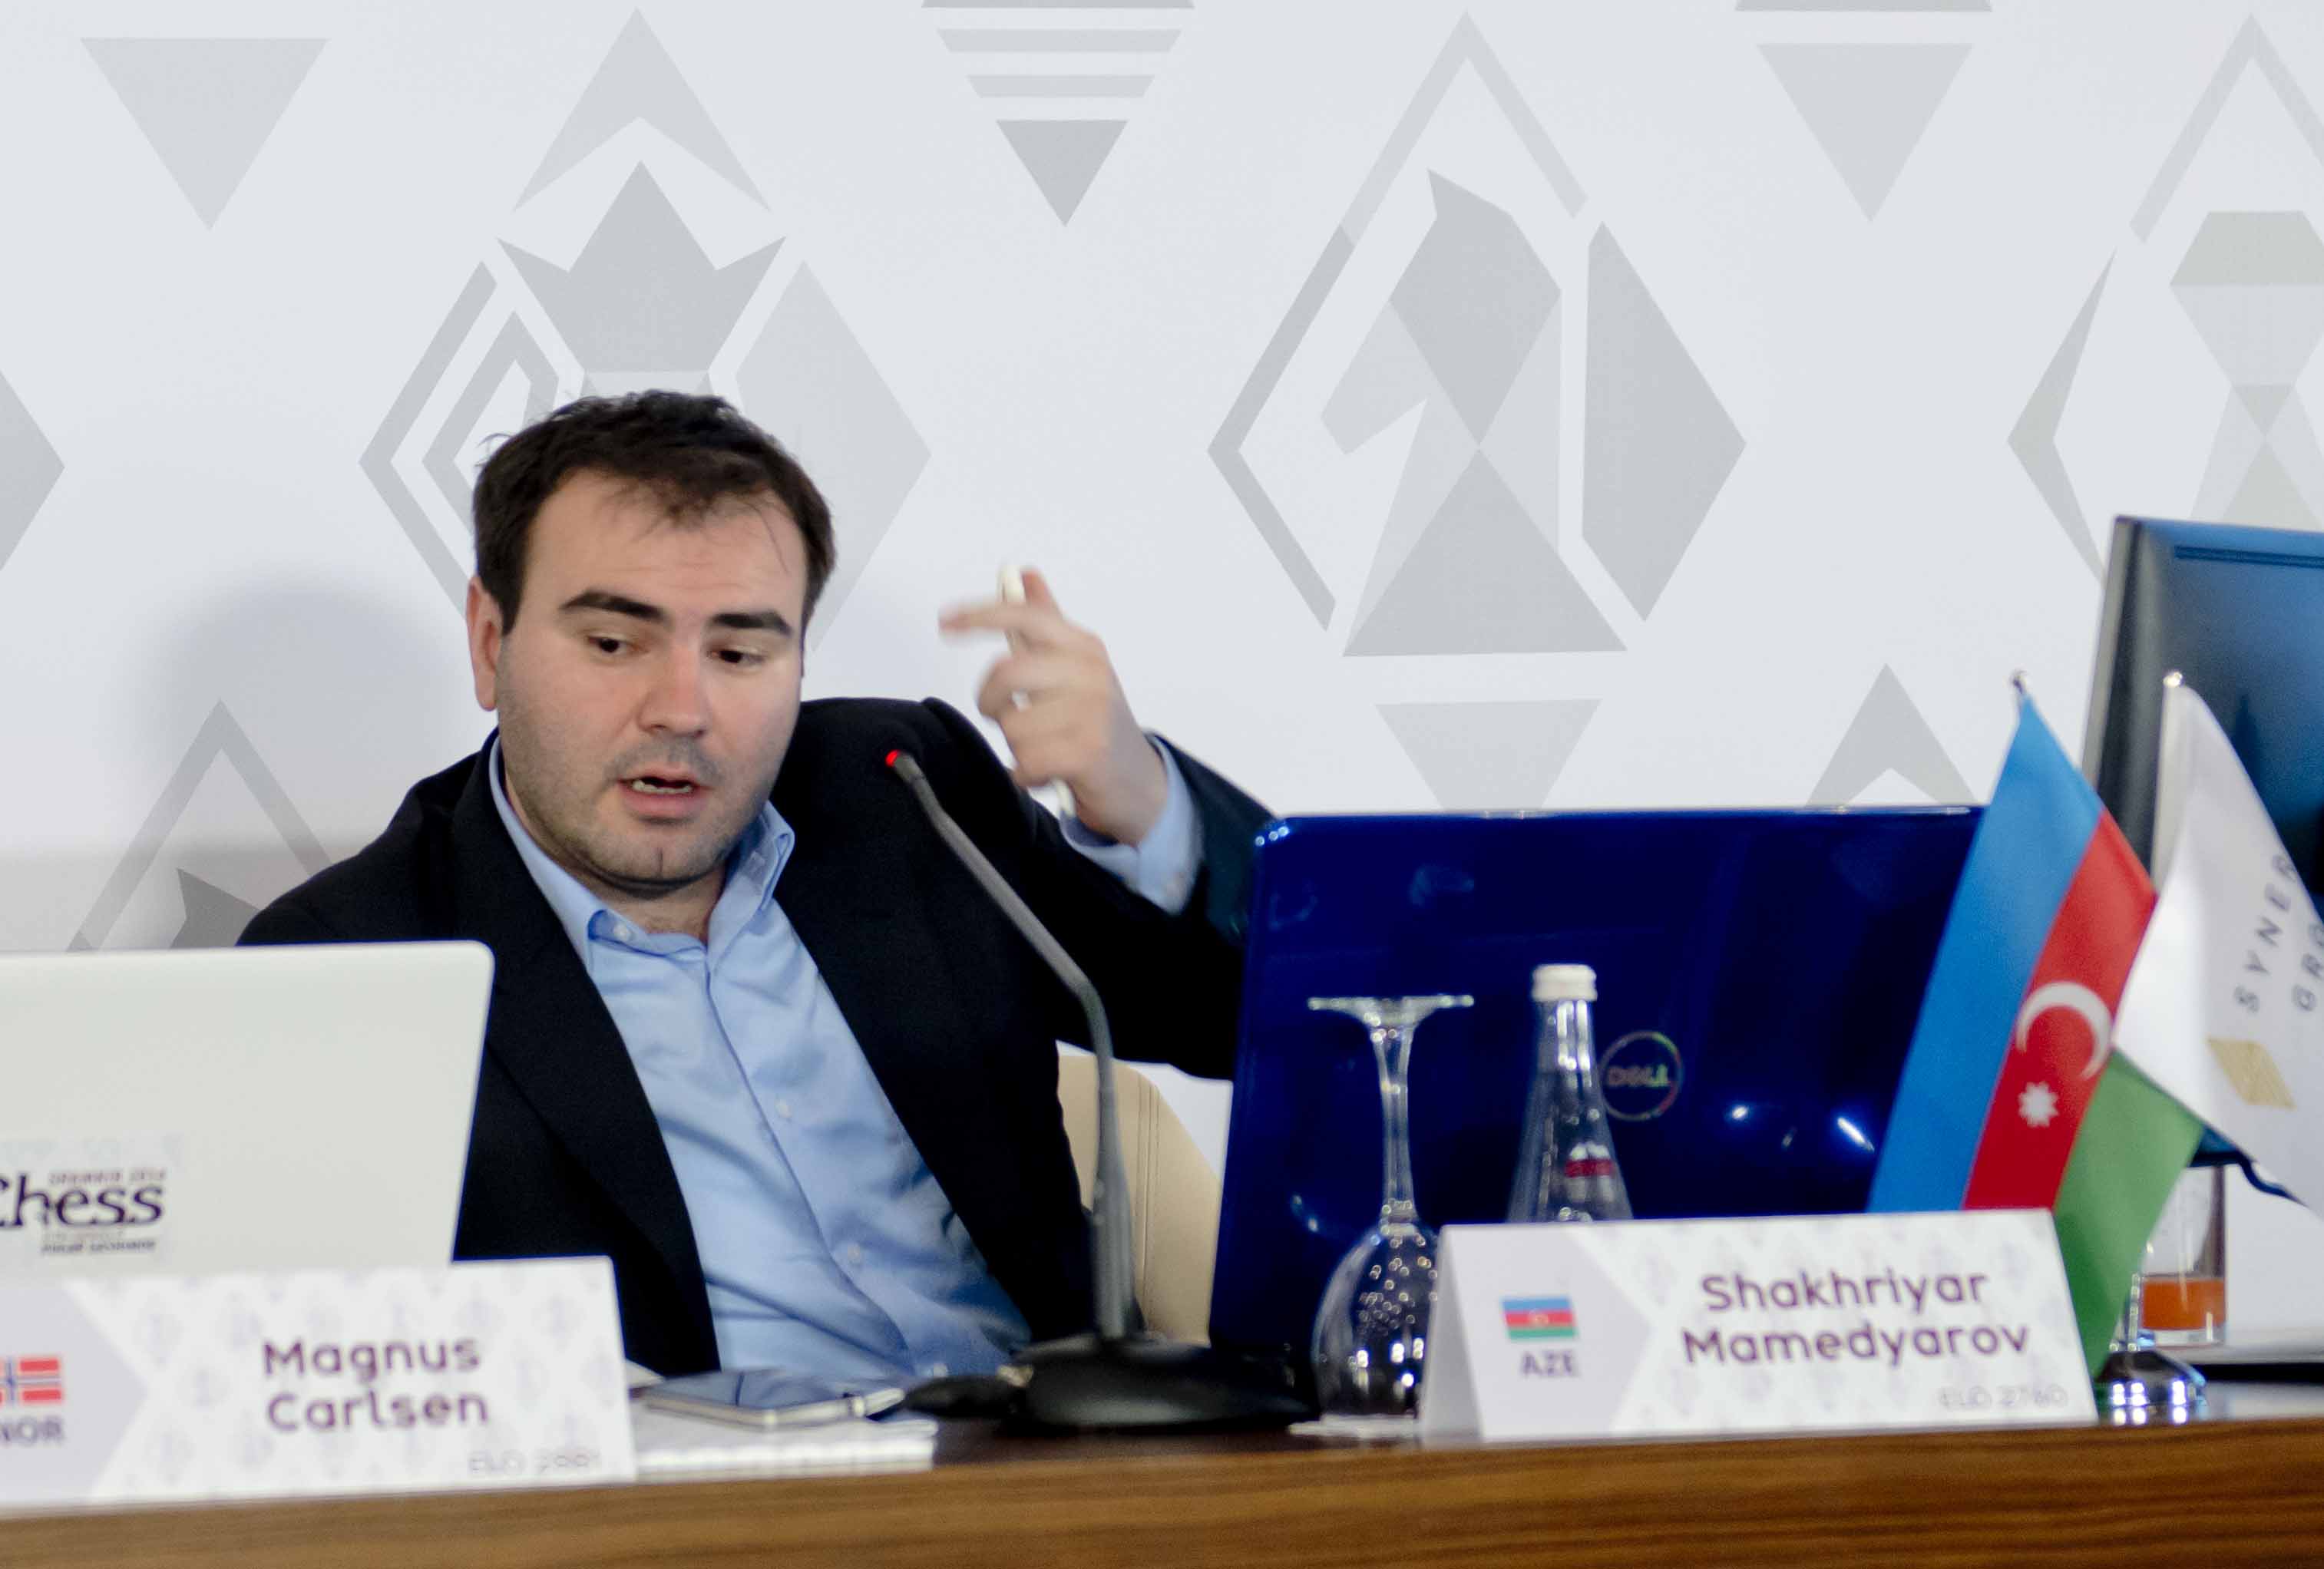 Шахрияр Мамедъяров: «Мы увидели уровень 1-го номера в мировых шахматах»